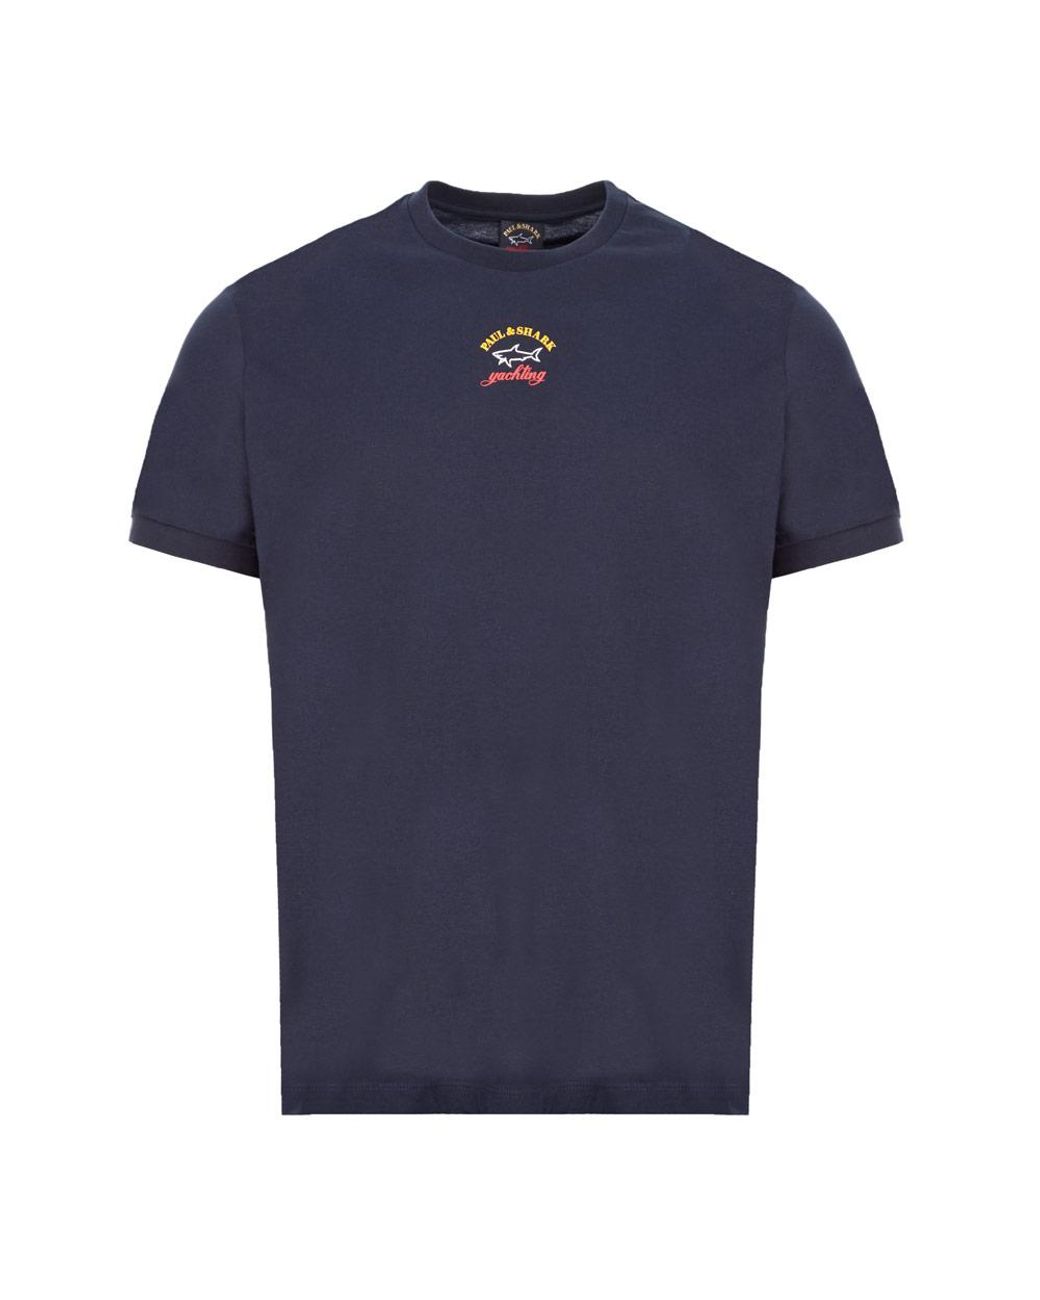 Paul & Shark T-shirt Logo in Navy (Blue) for Men - Lyst